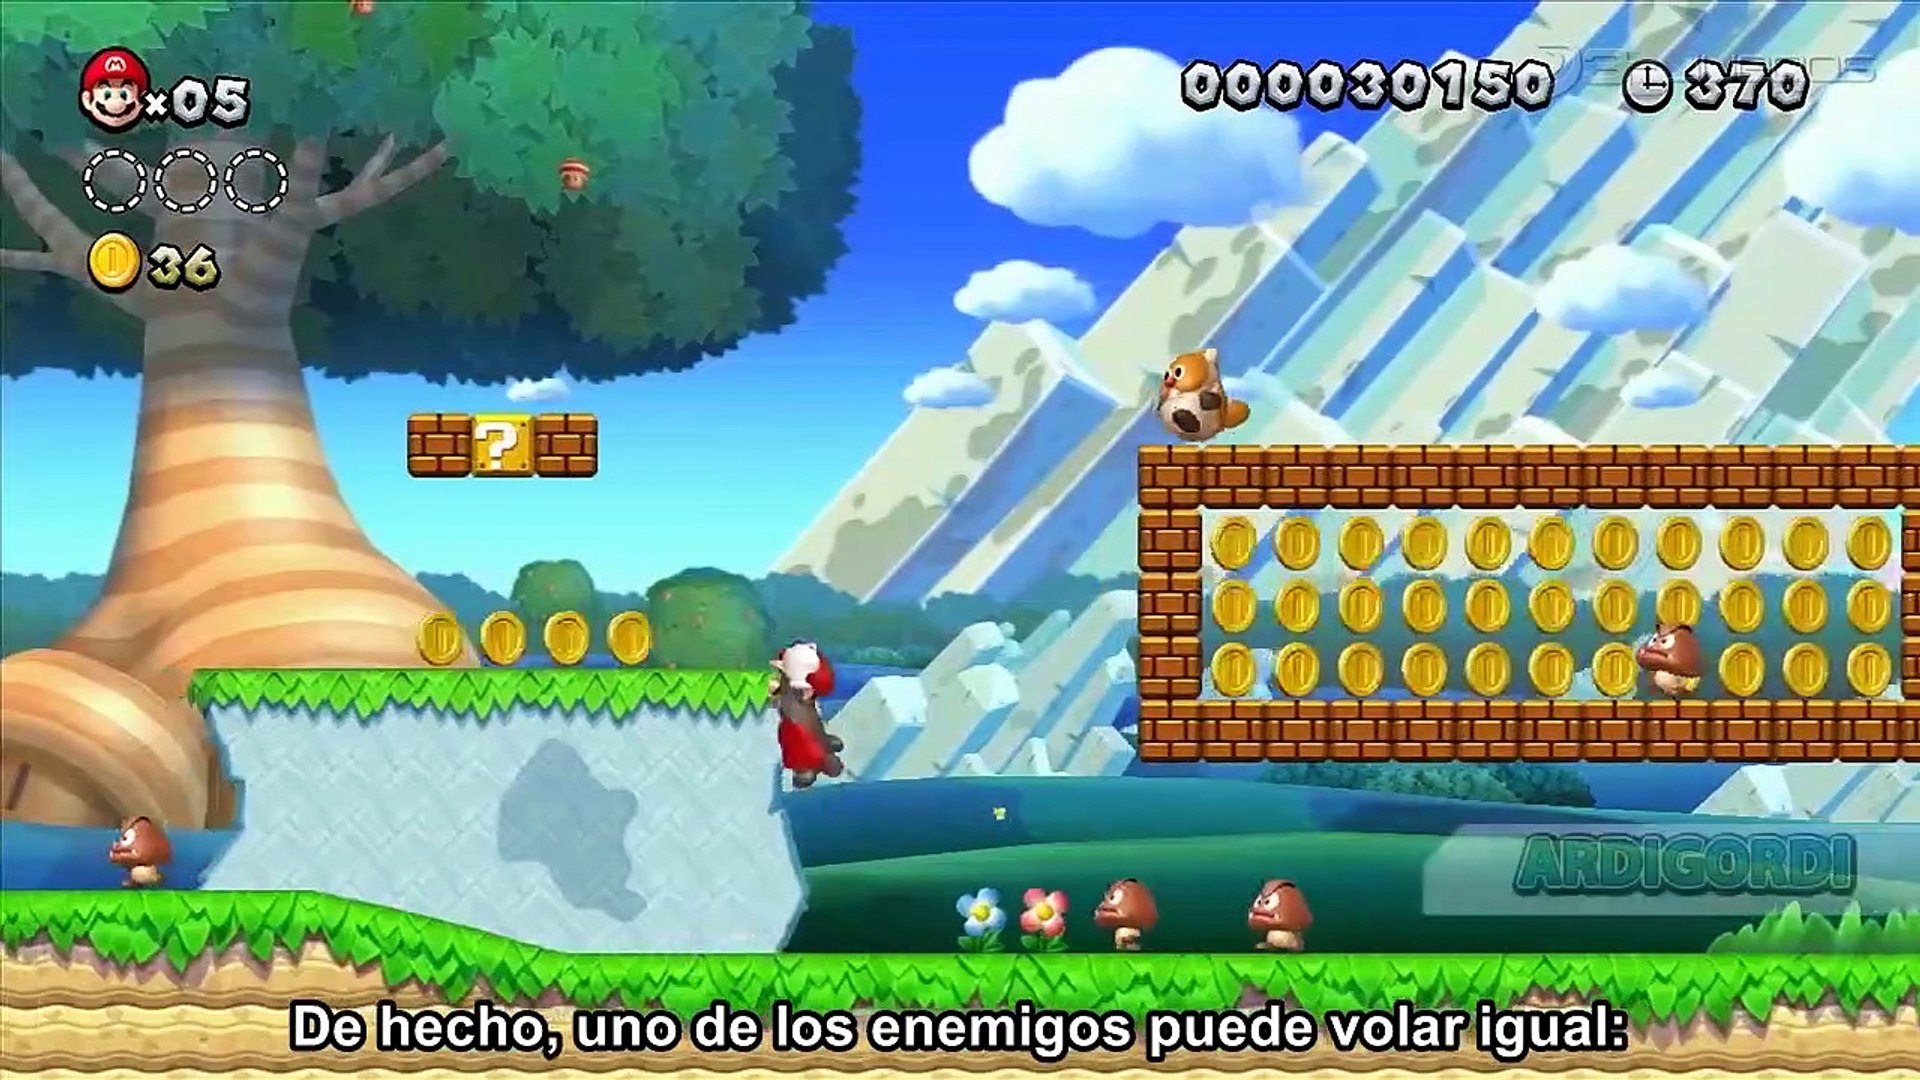 New Super Mario Bros U: Charla con los desarrolladores - Vídeo Dailymotion